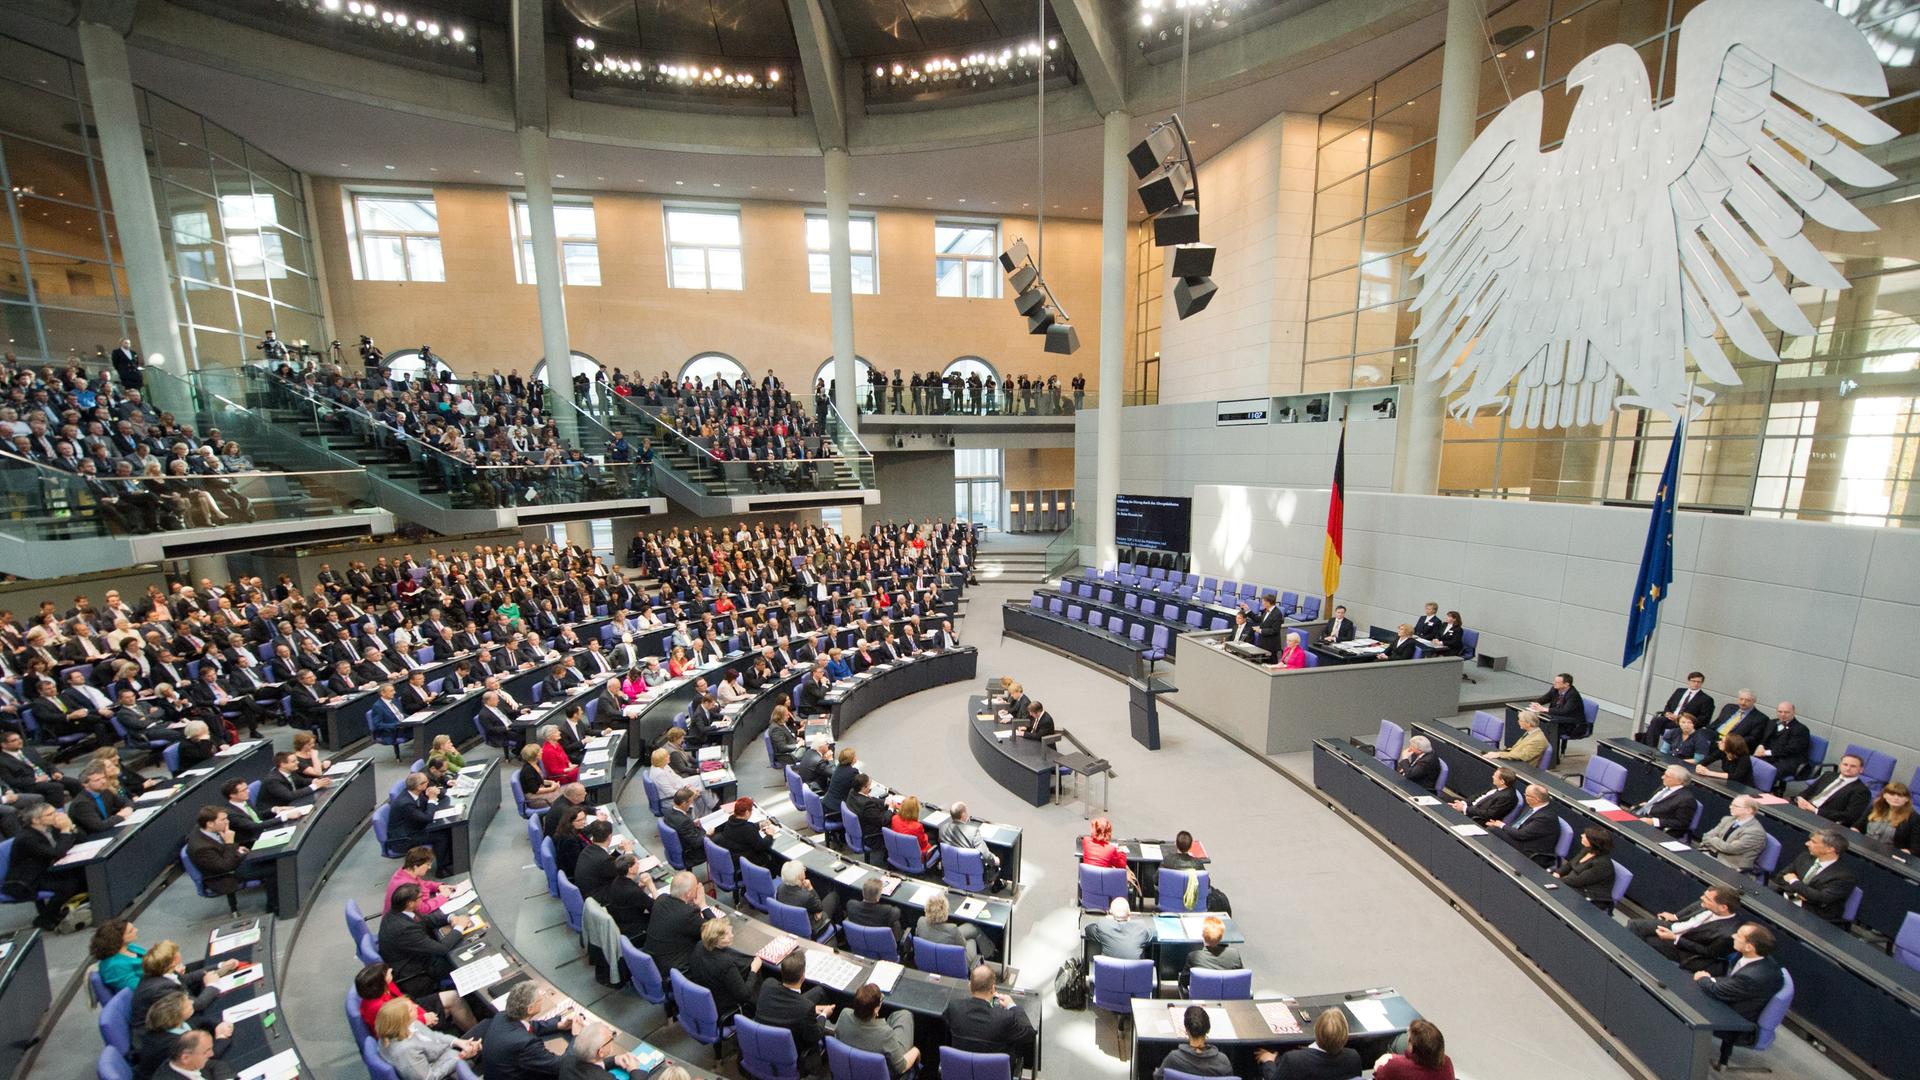 Konstituierende Sitzung des Bundestages im Reichstagsgebäude in Berlin. Bei der Sitzung am 22.10.2013 kommen die Parlamentarier der 18. Legislaturperiode erstmals nach der Bundestagswahl im Plenum zusammen